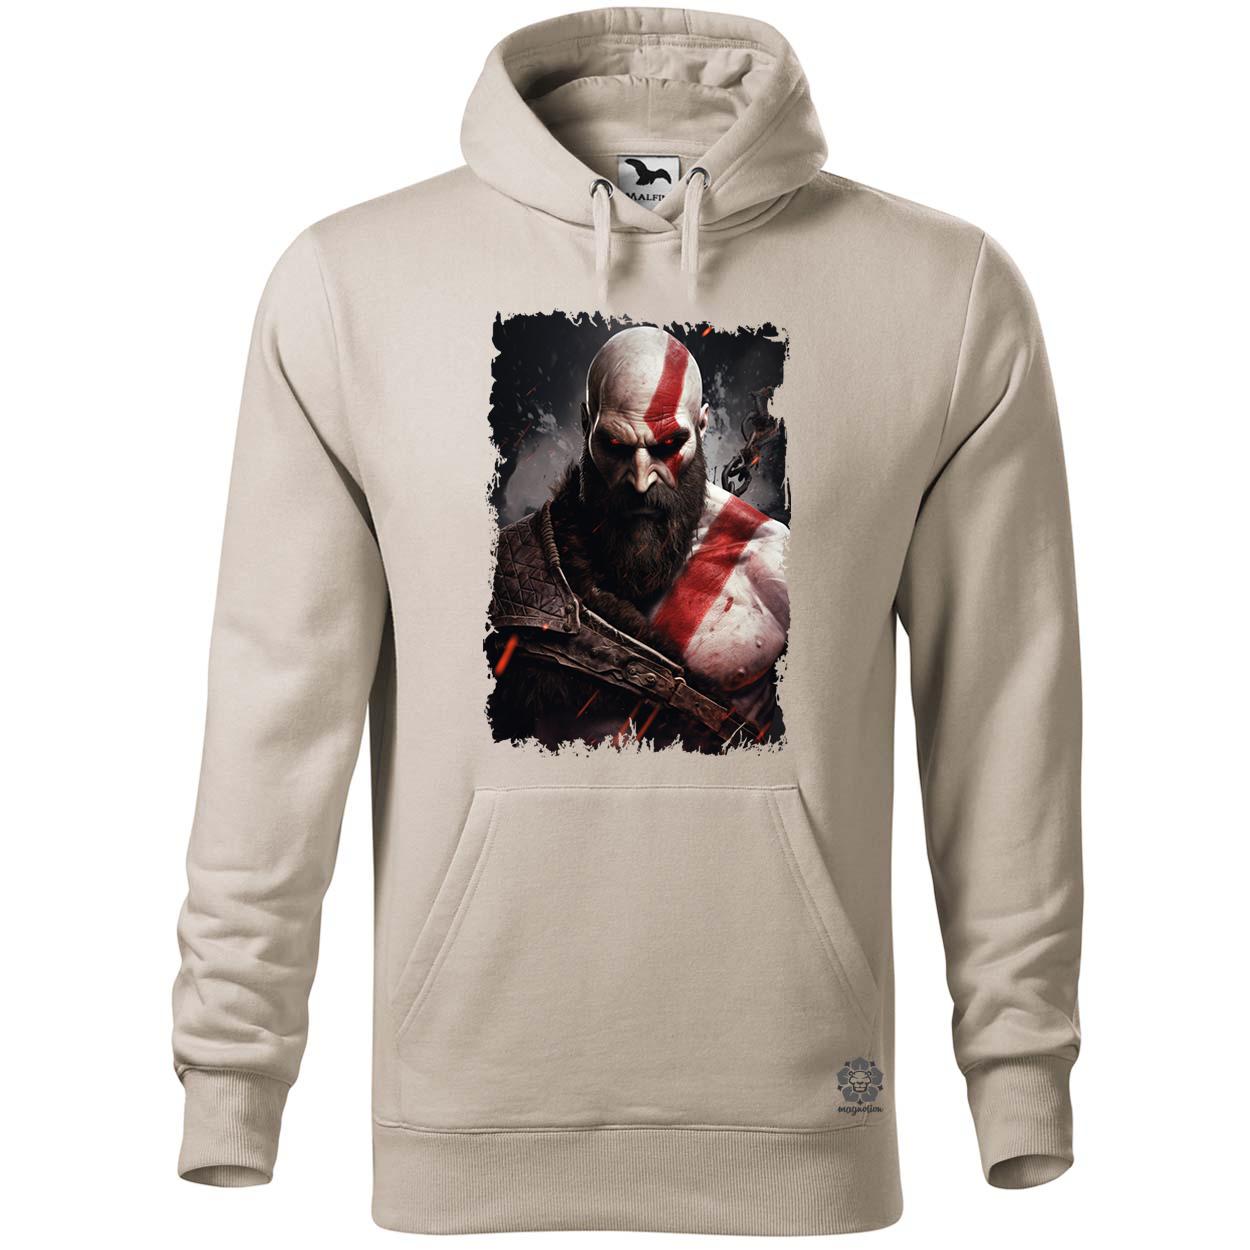 Kratos fanart v9